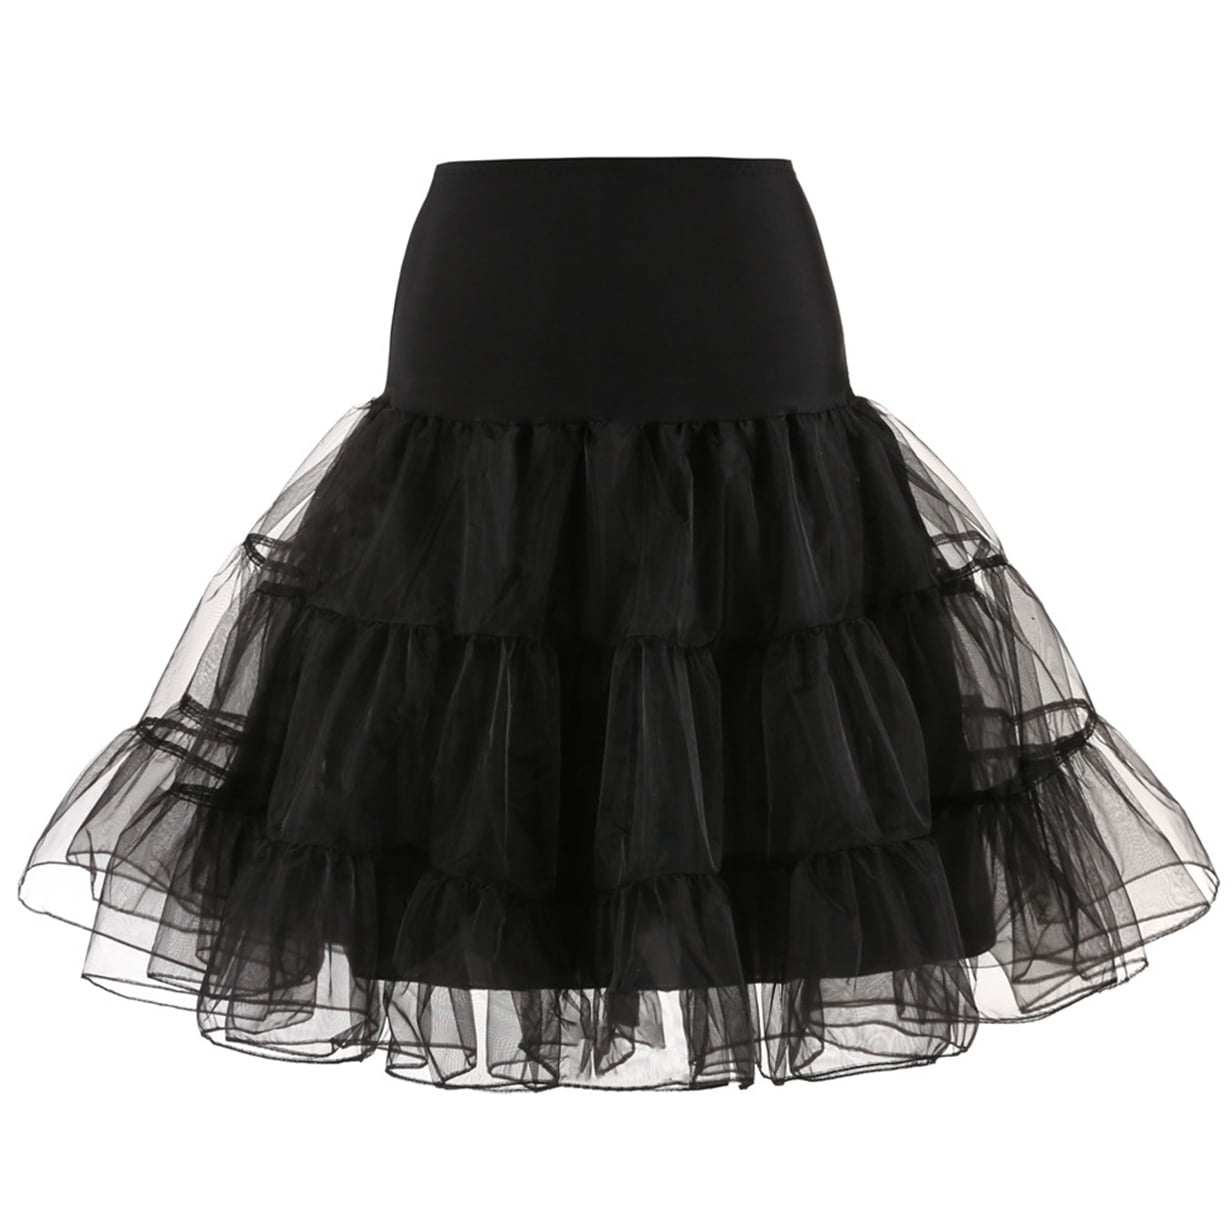 27" Retro Underskirt 50s Swing Vintage Petticoat Rockabilly Tutu Fancy Net Skirt 